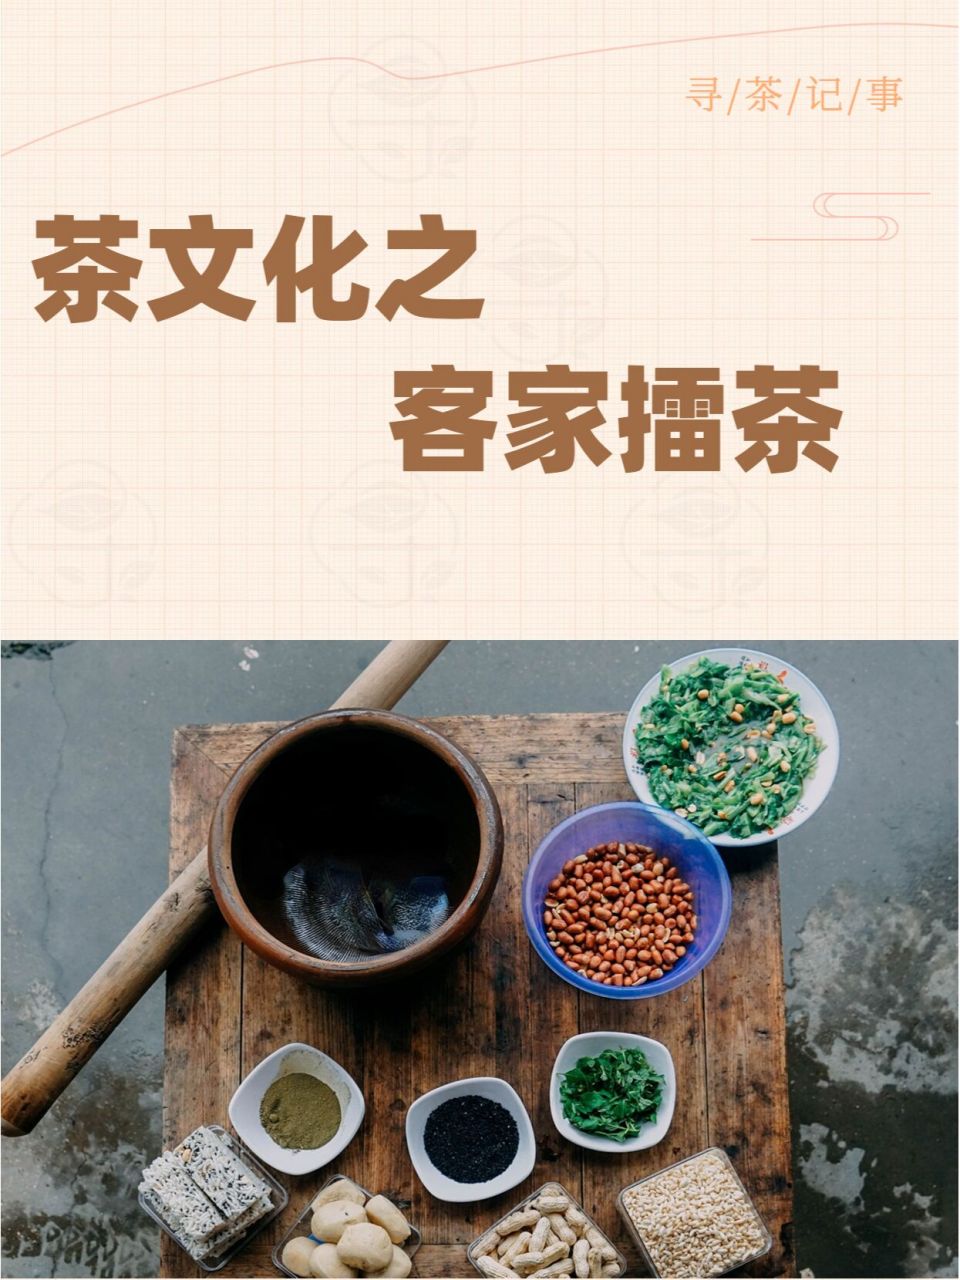 茶文化——客家擂茶02 95 擂茶,又名三生汤